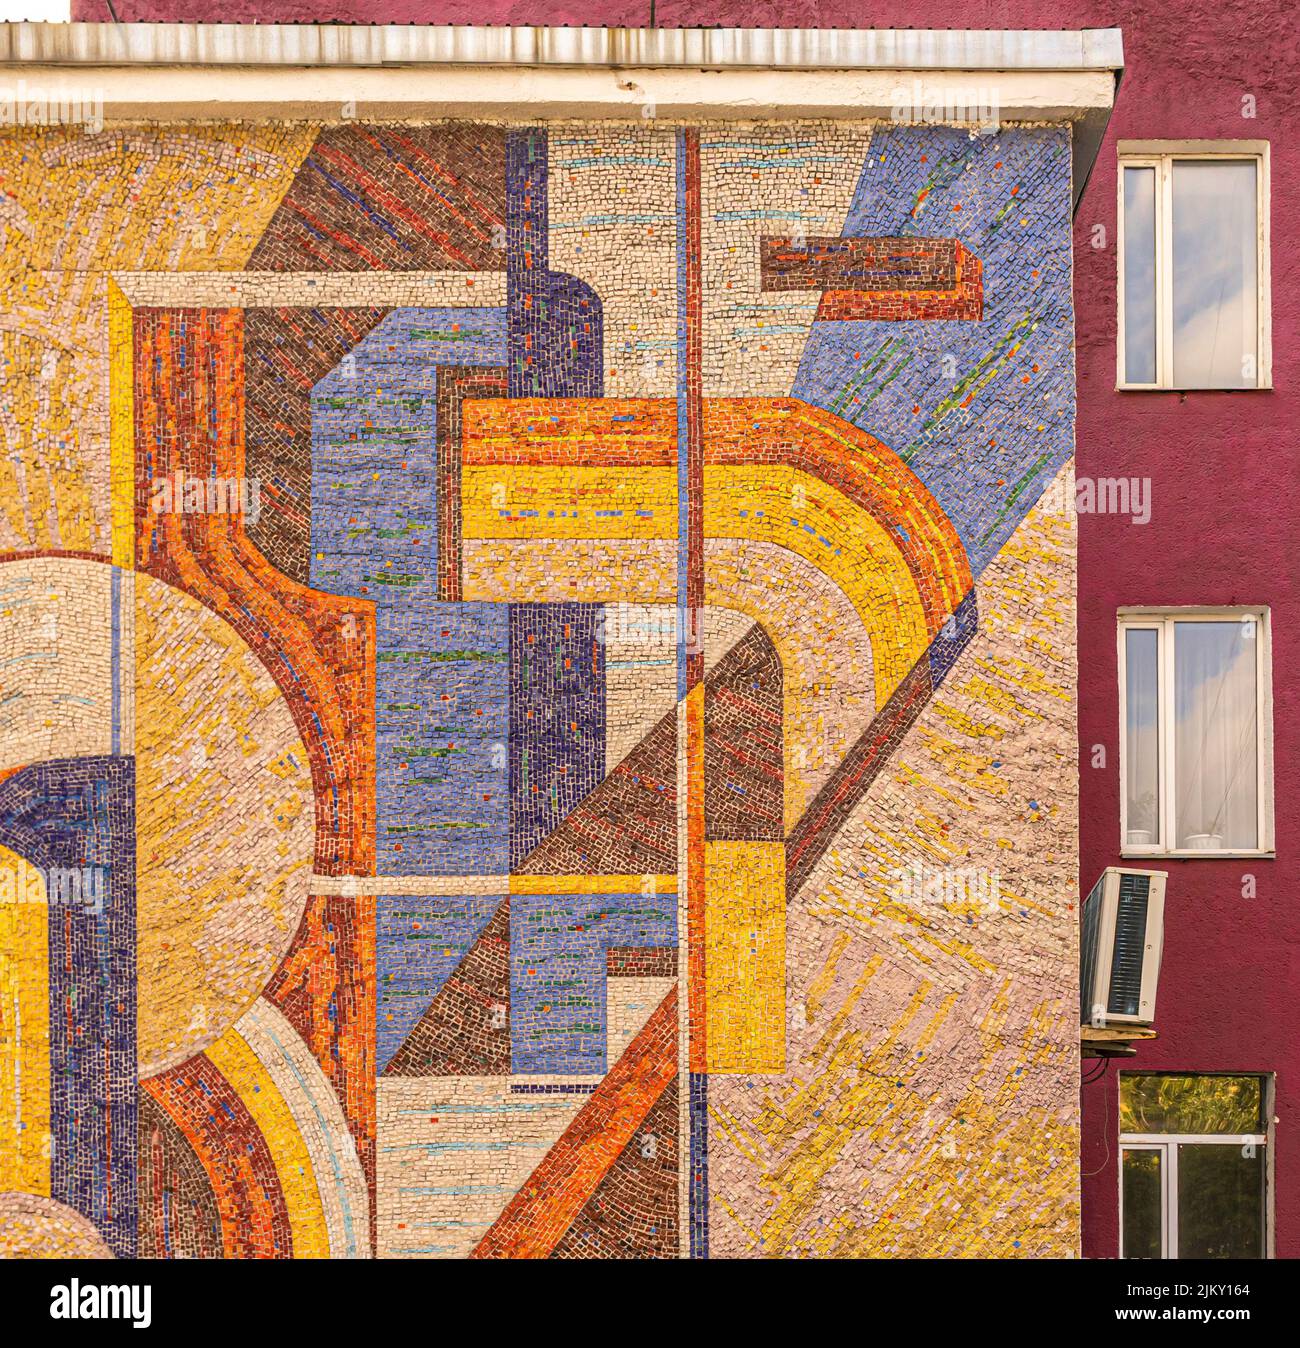 Kazakh tiled mural with abstract geometrc pattern. Karaganda, Kazakhstan Stock Photo